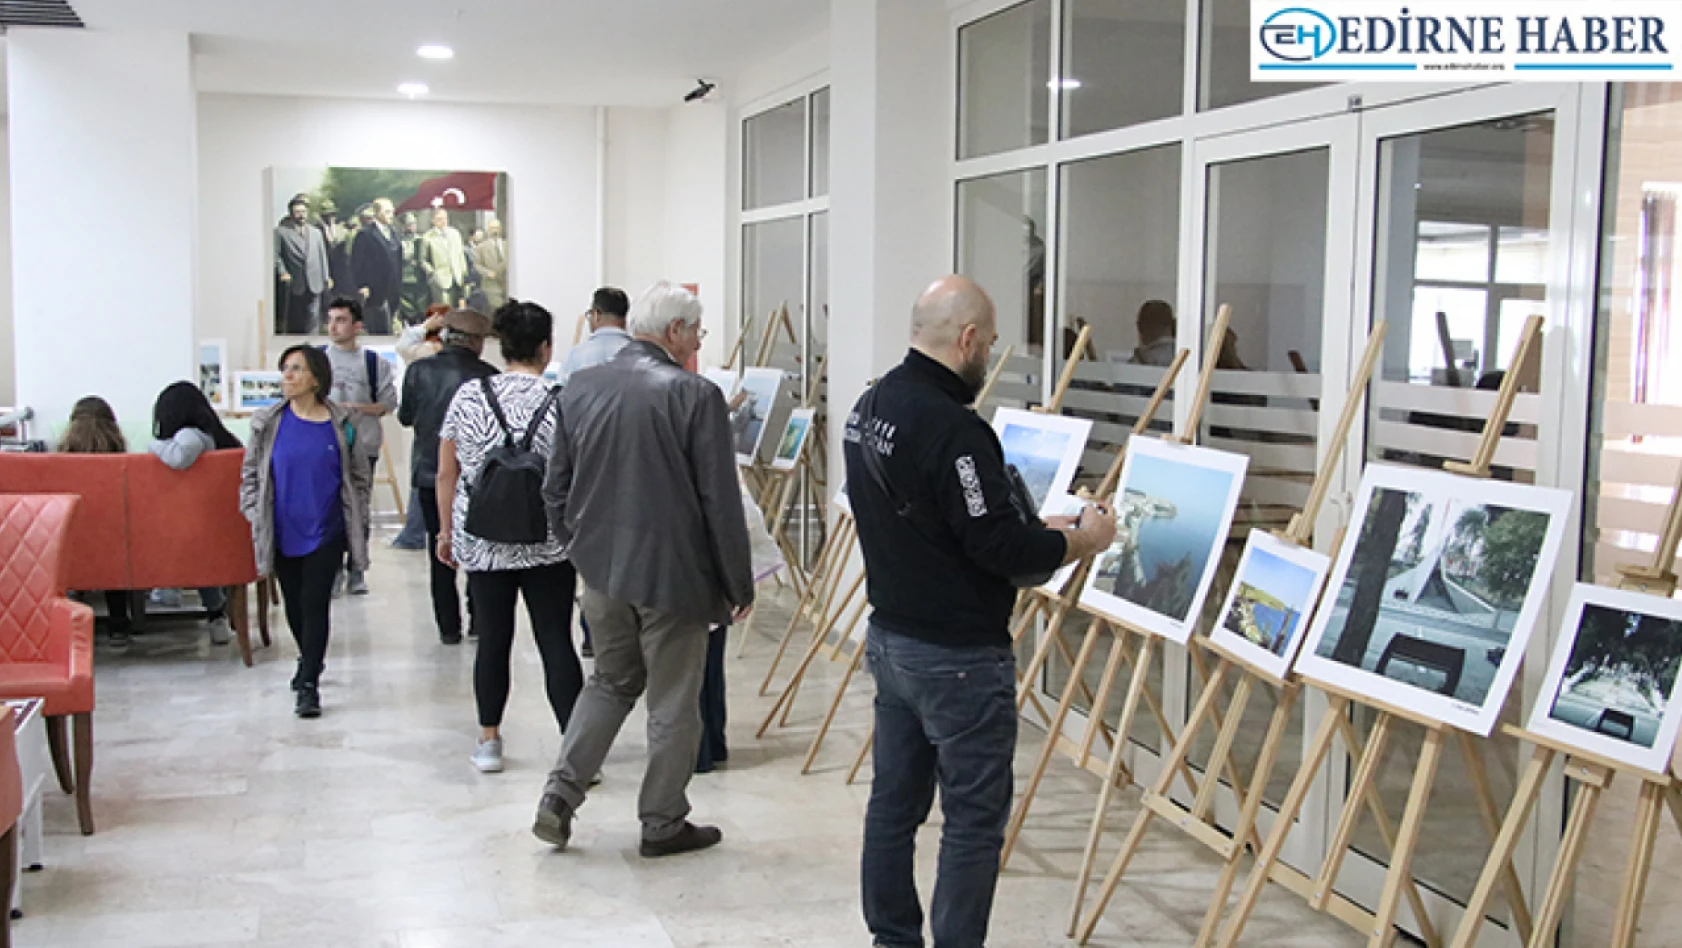 Tekirdağ'da kentin eski yeni hallerinin kıyaslandığı fotoğraf sergisi açıldı